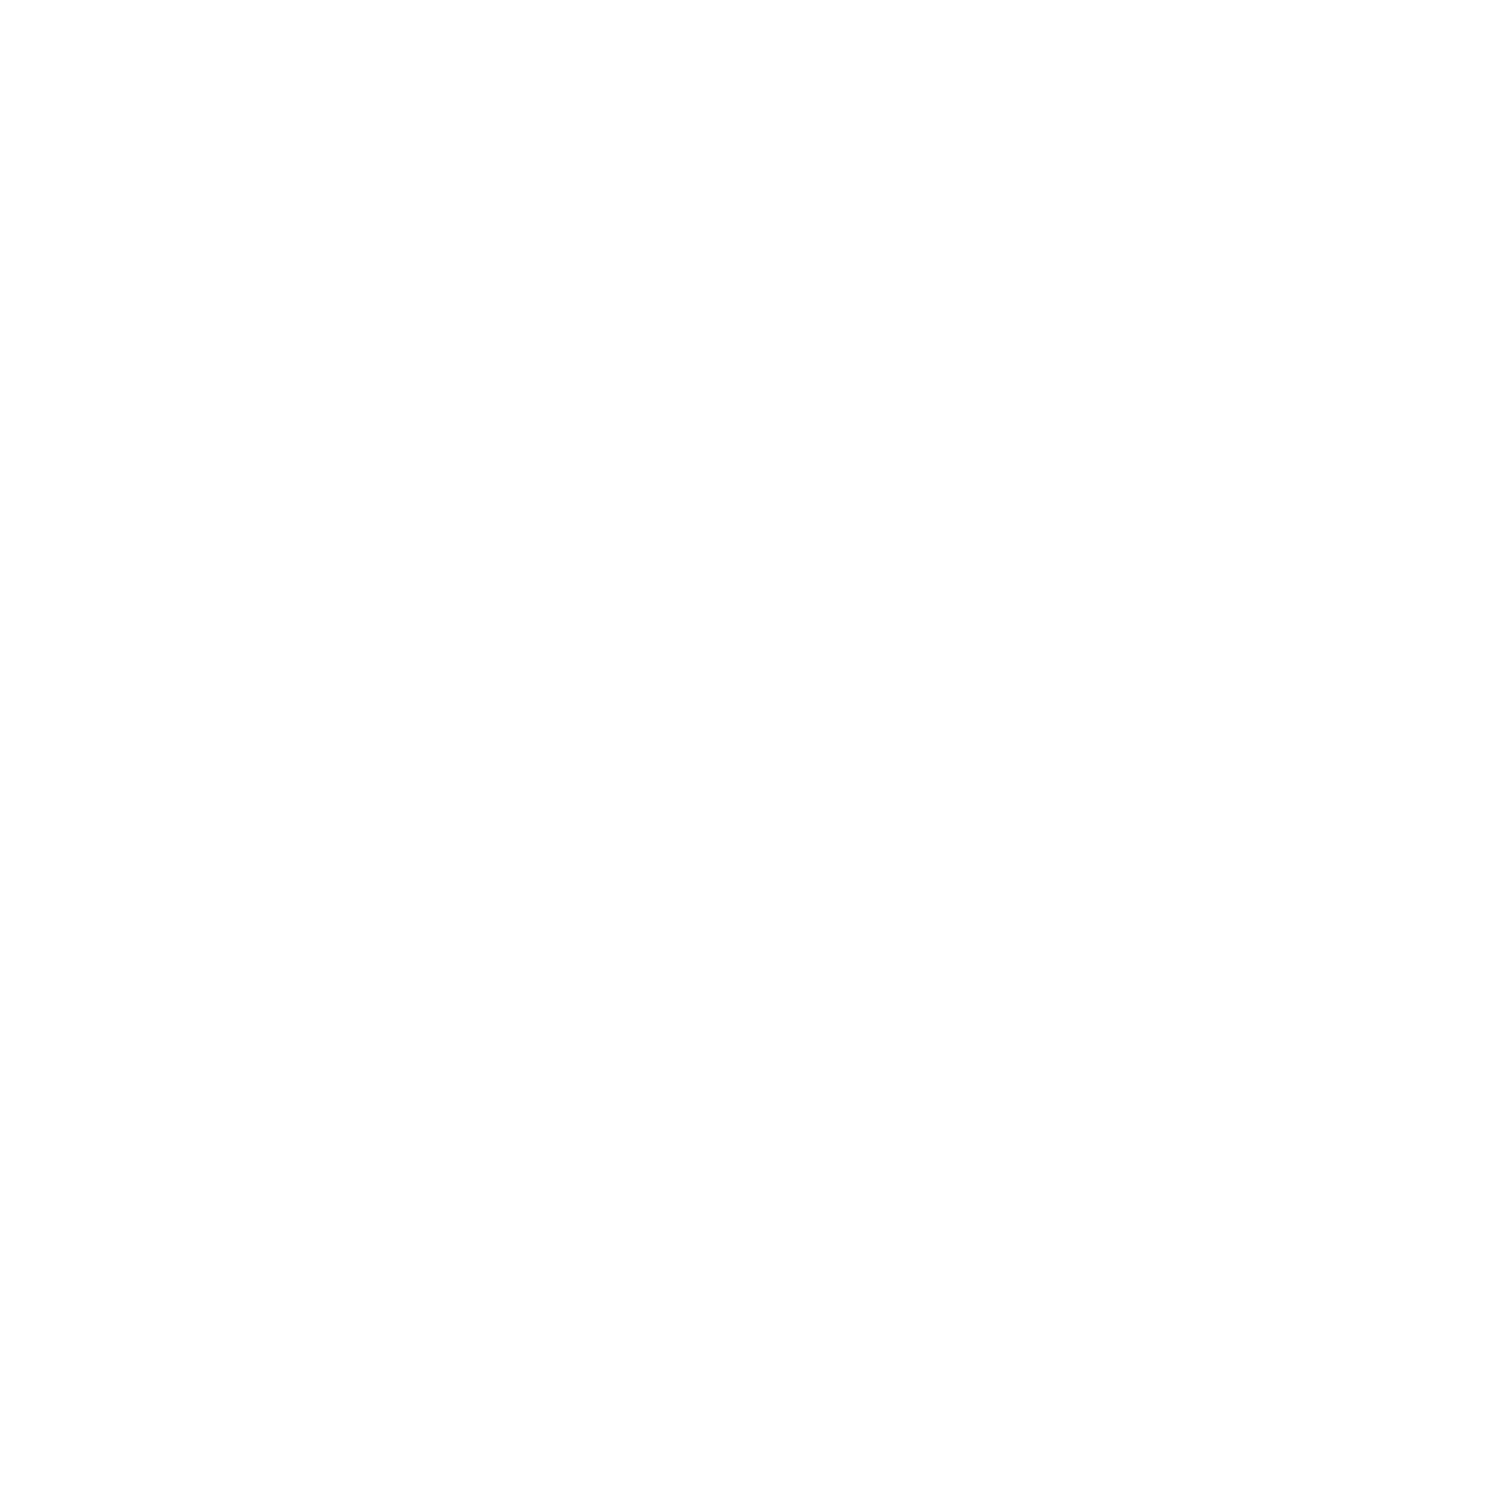 Amanda Wiig Weddings